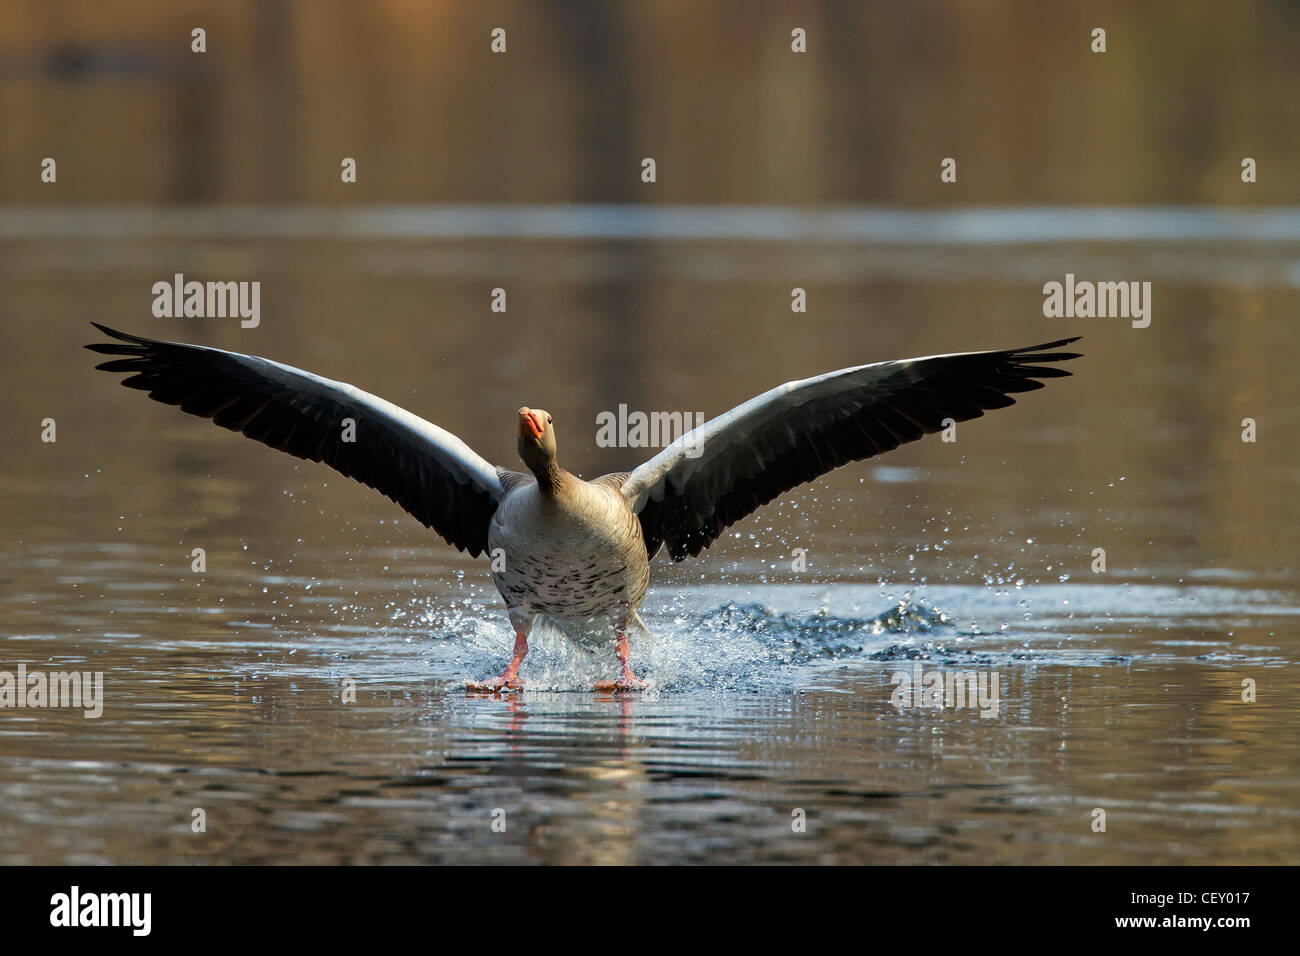 Greylag goose / graylag goose (Anser anser) landing on lake, Germany Stock Photo